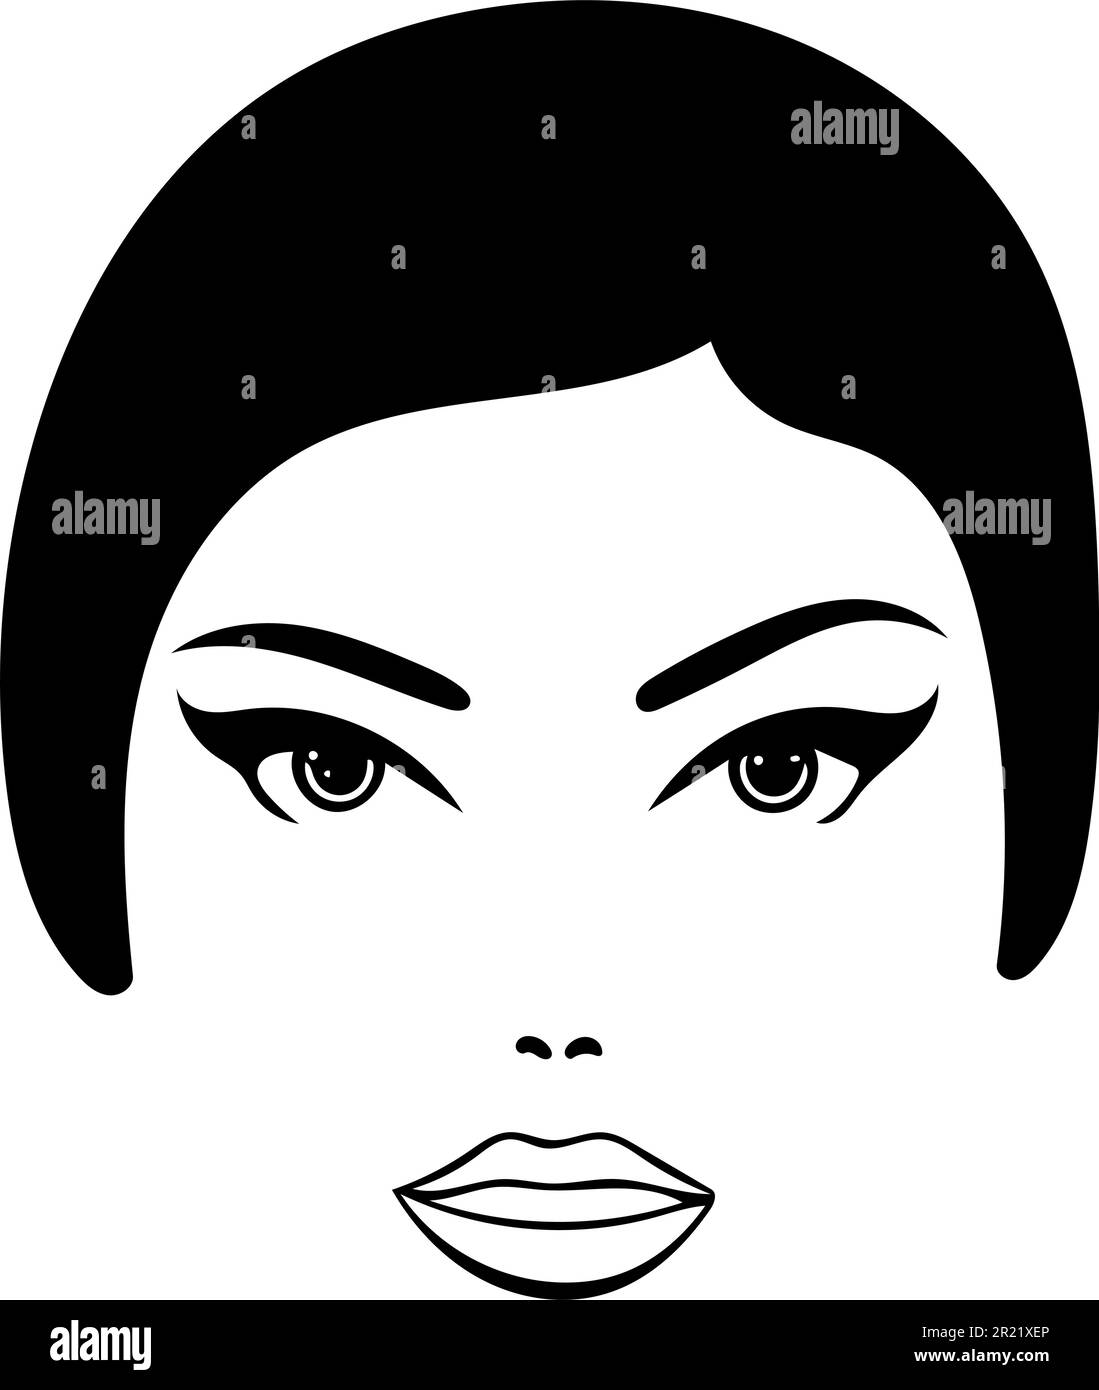 Das Gesicht einer schönen Frau als Ikone. Einfache schwarze Linien vor transparentem Hintergrund. Stock Vektor